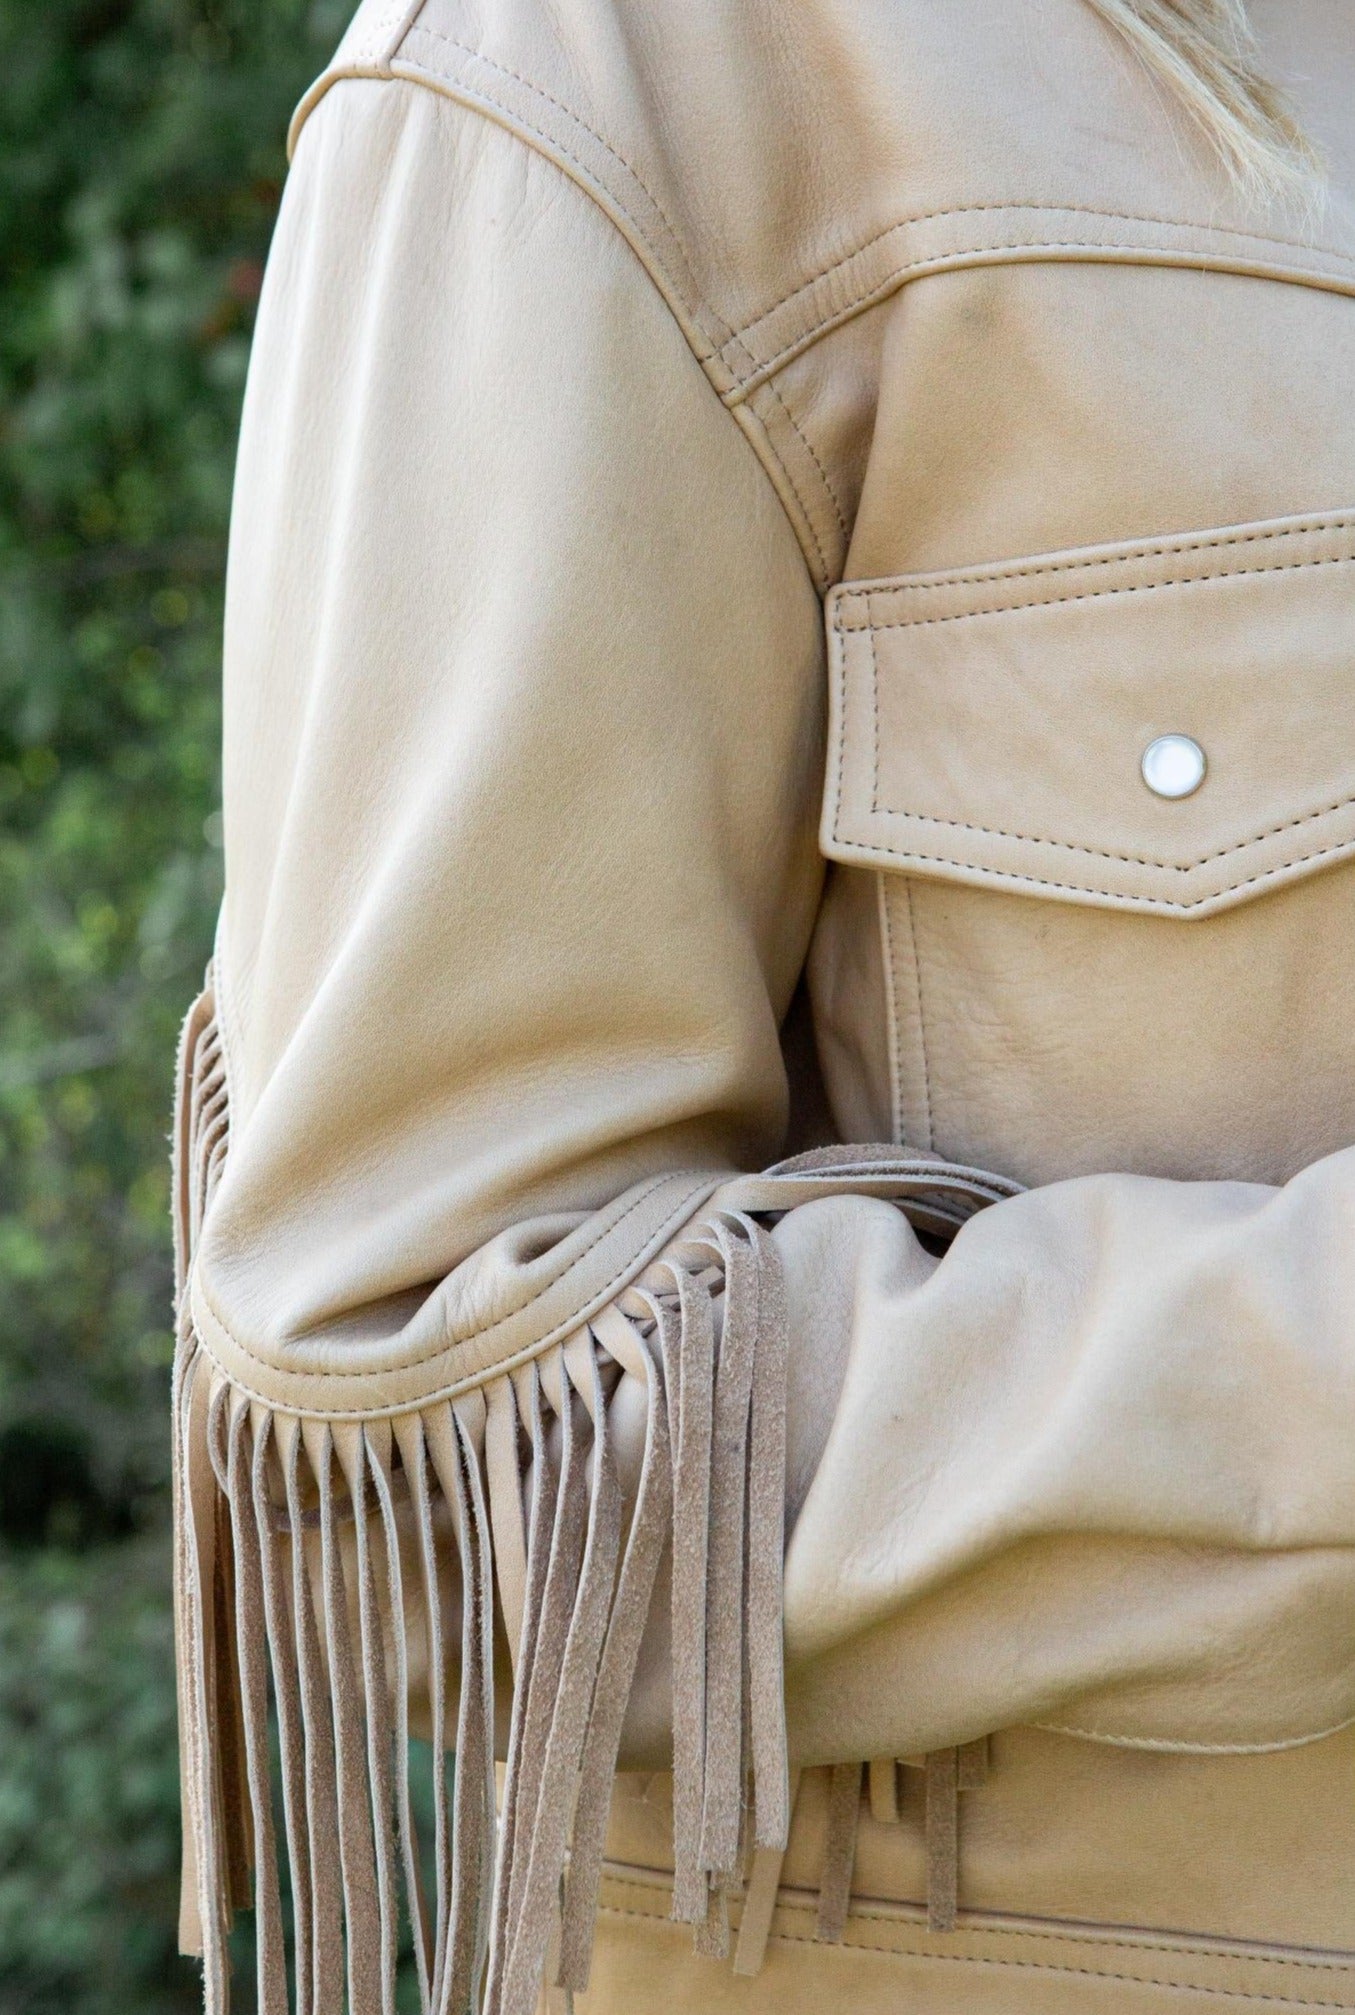 Desperado Leather Jacket with Twisted Fringe Detailing